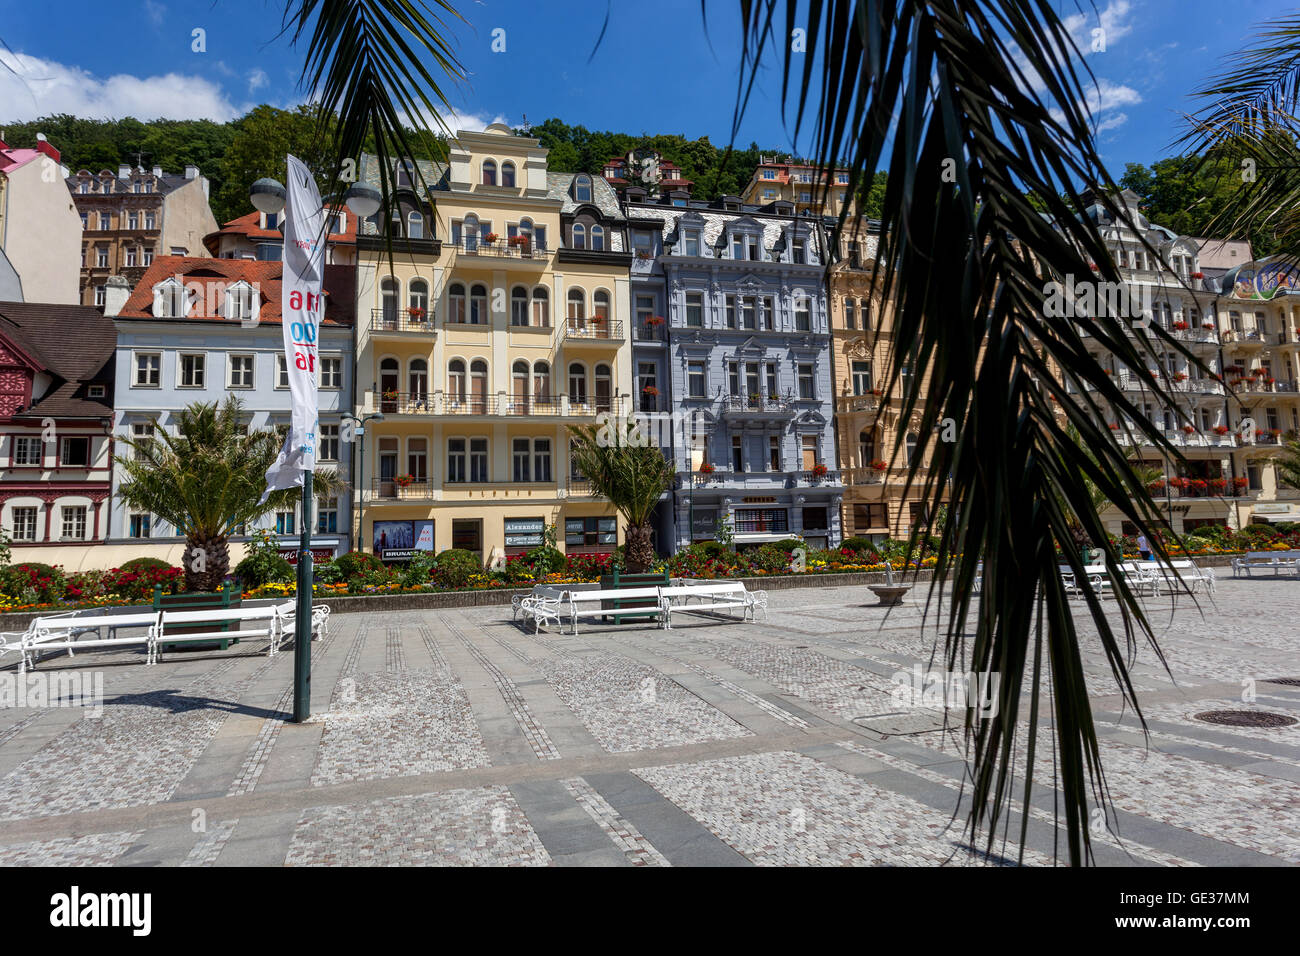 Zentrum der Stadt mit Gebäuden und Hotels entlang der Kolonnade, Karlovy Vary (Karlsbad), Spa Stadt, West-Böhmen, Tschechische Republik Stockfoto